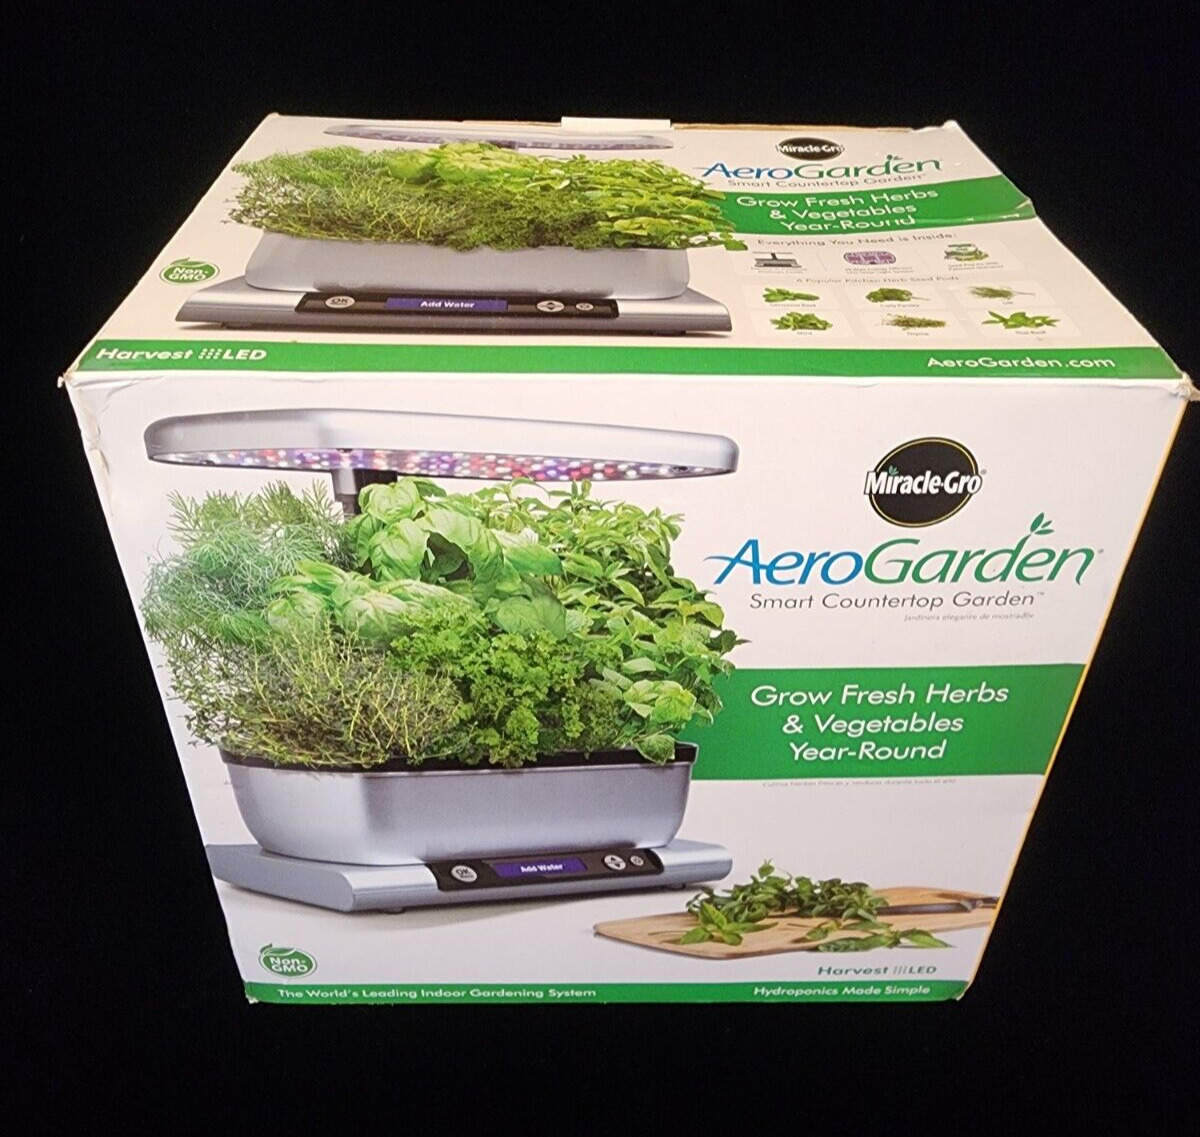 Miracle-Gro AeroGarden Smart Counter Top Garden Harvest LED Open Box